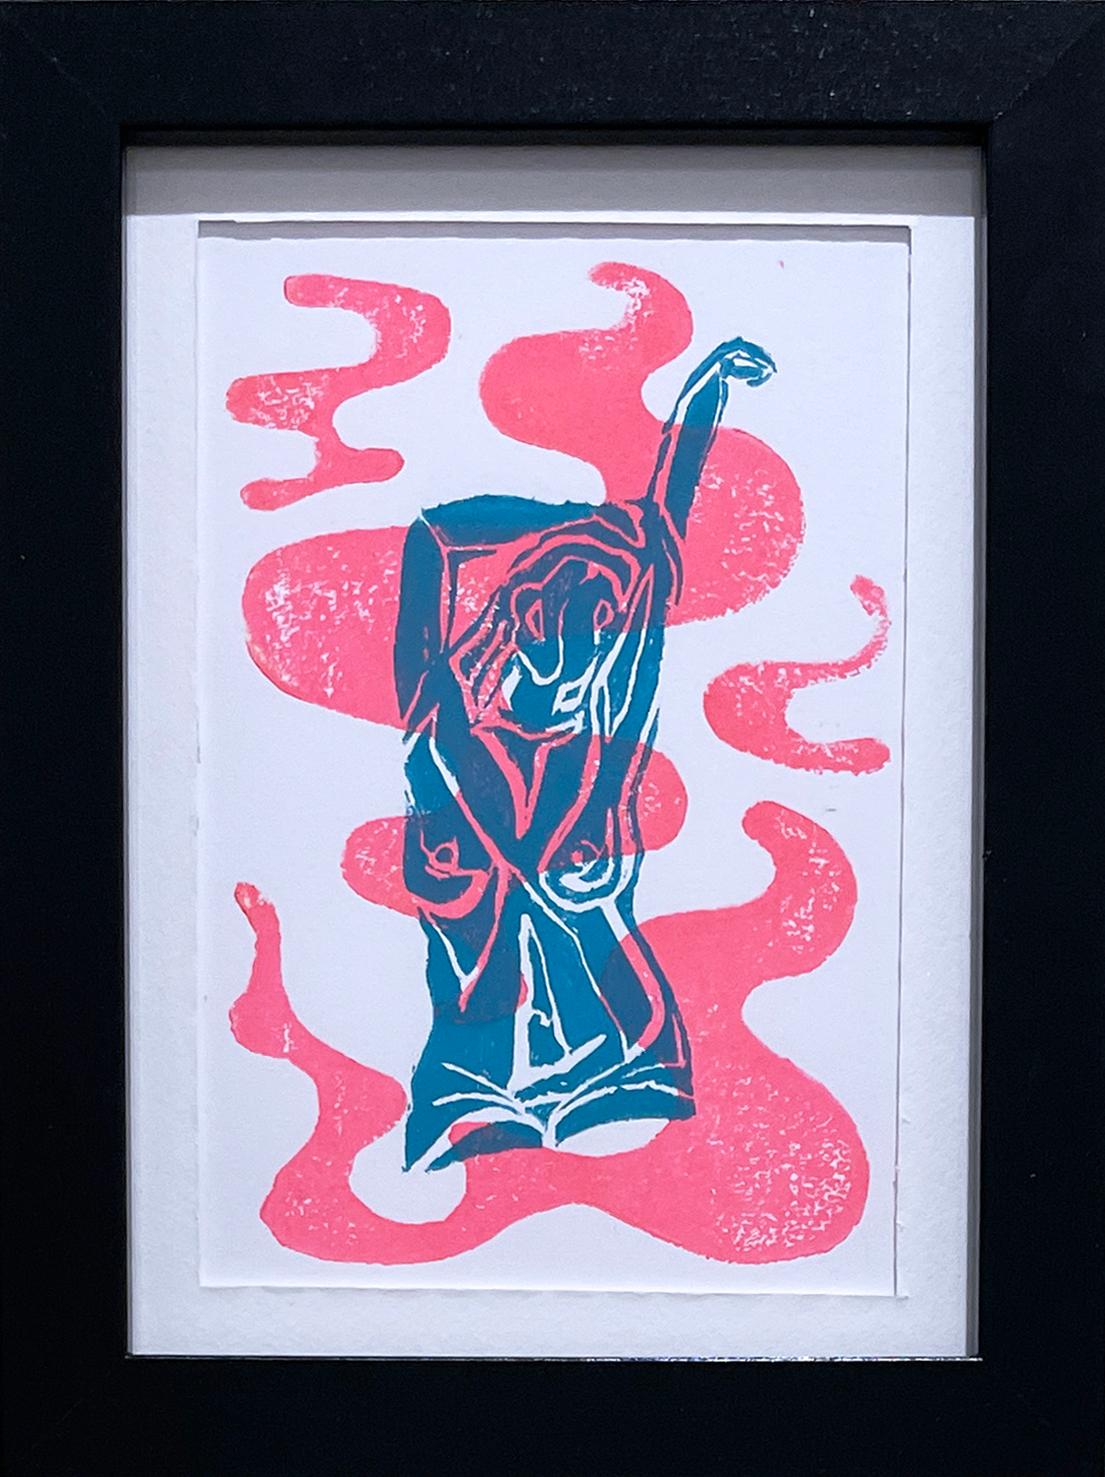 Unleash, Ink, Paper Figurative Woman Nude, Pink & Blue, Monoprint Contour Lines